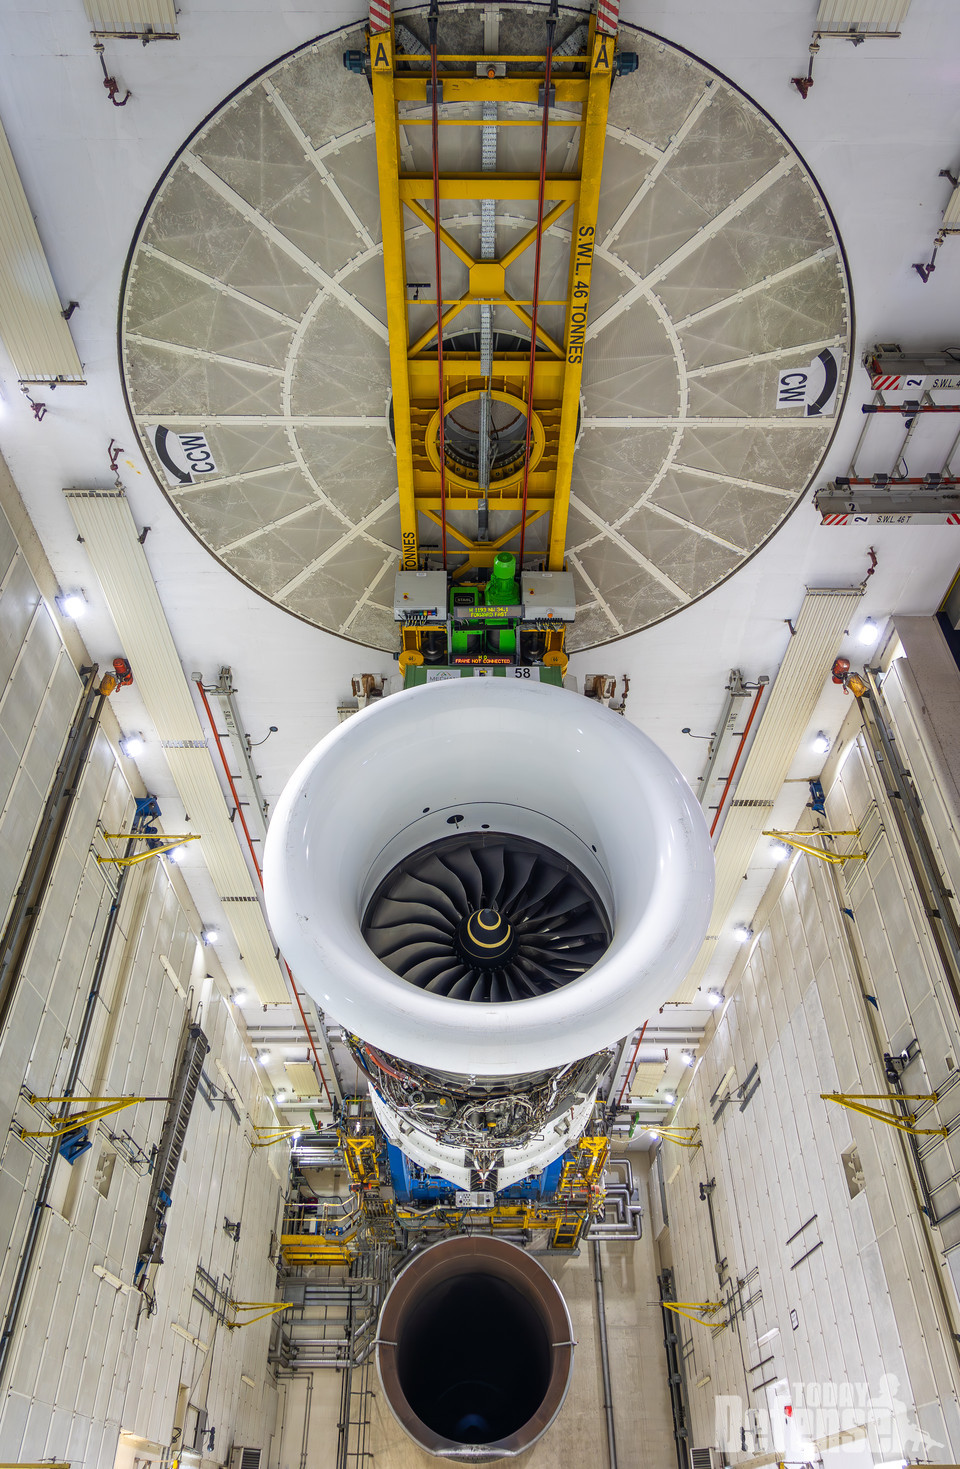 100% 지속가능한 항공 연료(SAF) 테스트 성공적 완료 (사진:롤스로이스)